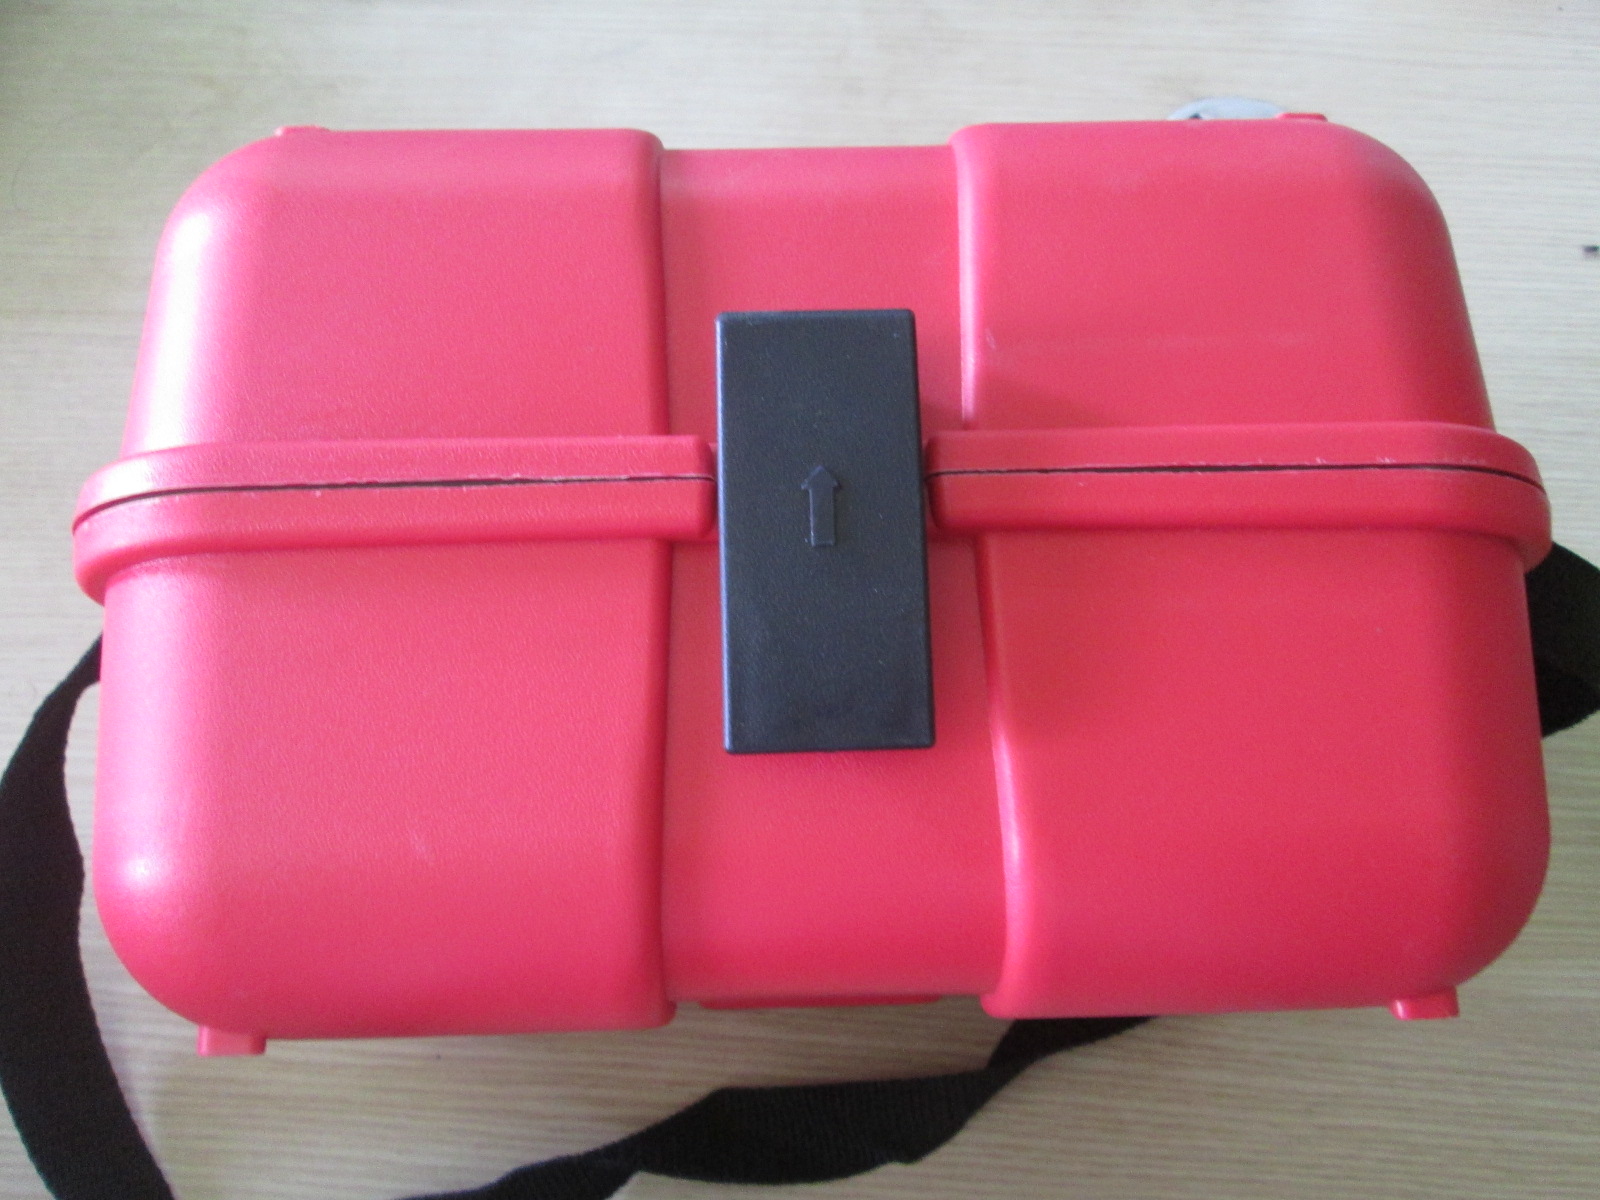 Sử dụng hộp đựng máy thủy bình sokkia giúp bảo vệ và thuận tiện di chuyển